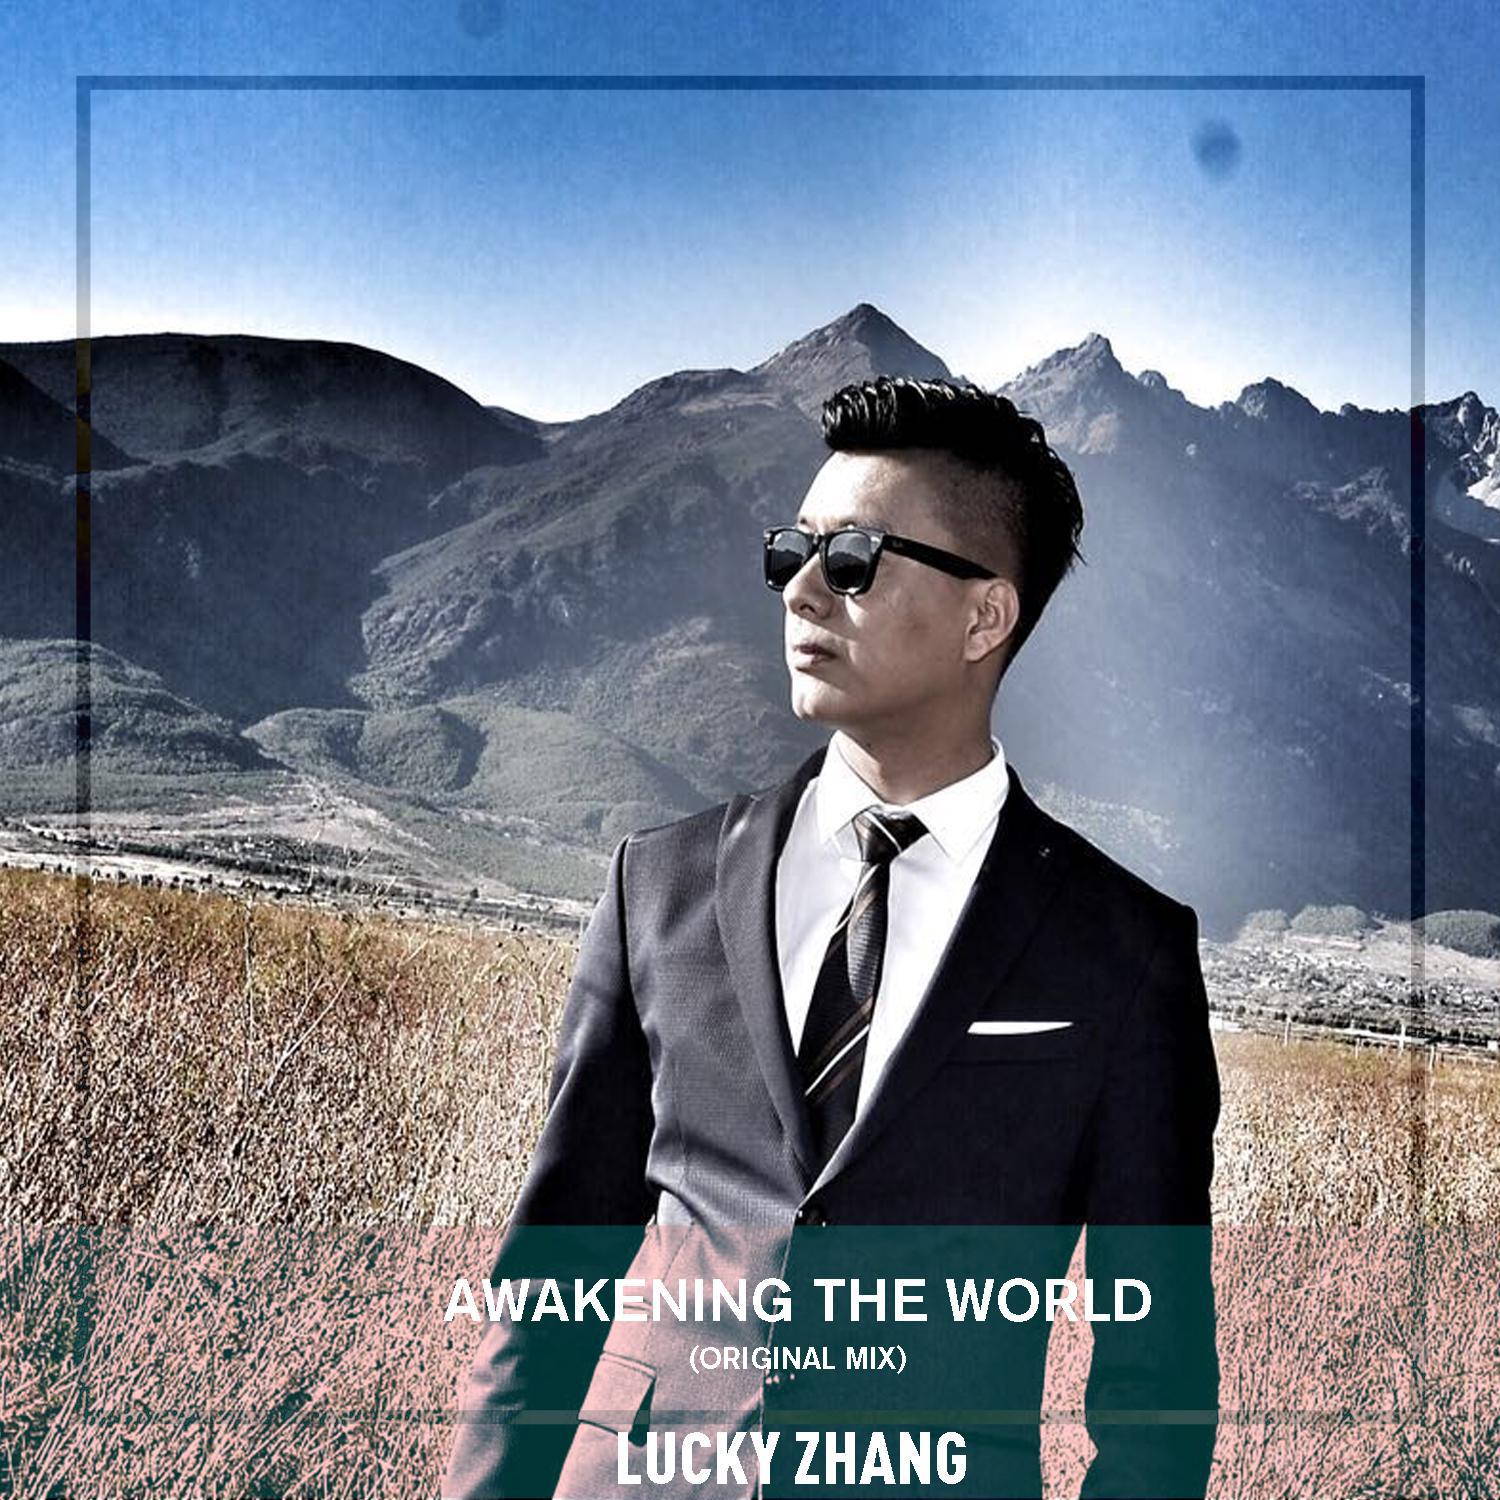 LuckyZhang - Awakening the world(Original Mix)专辑